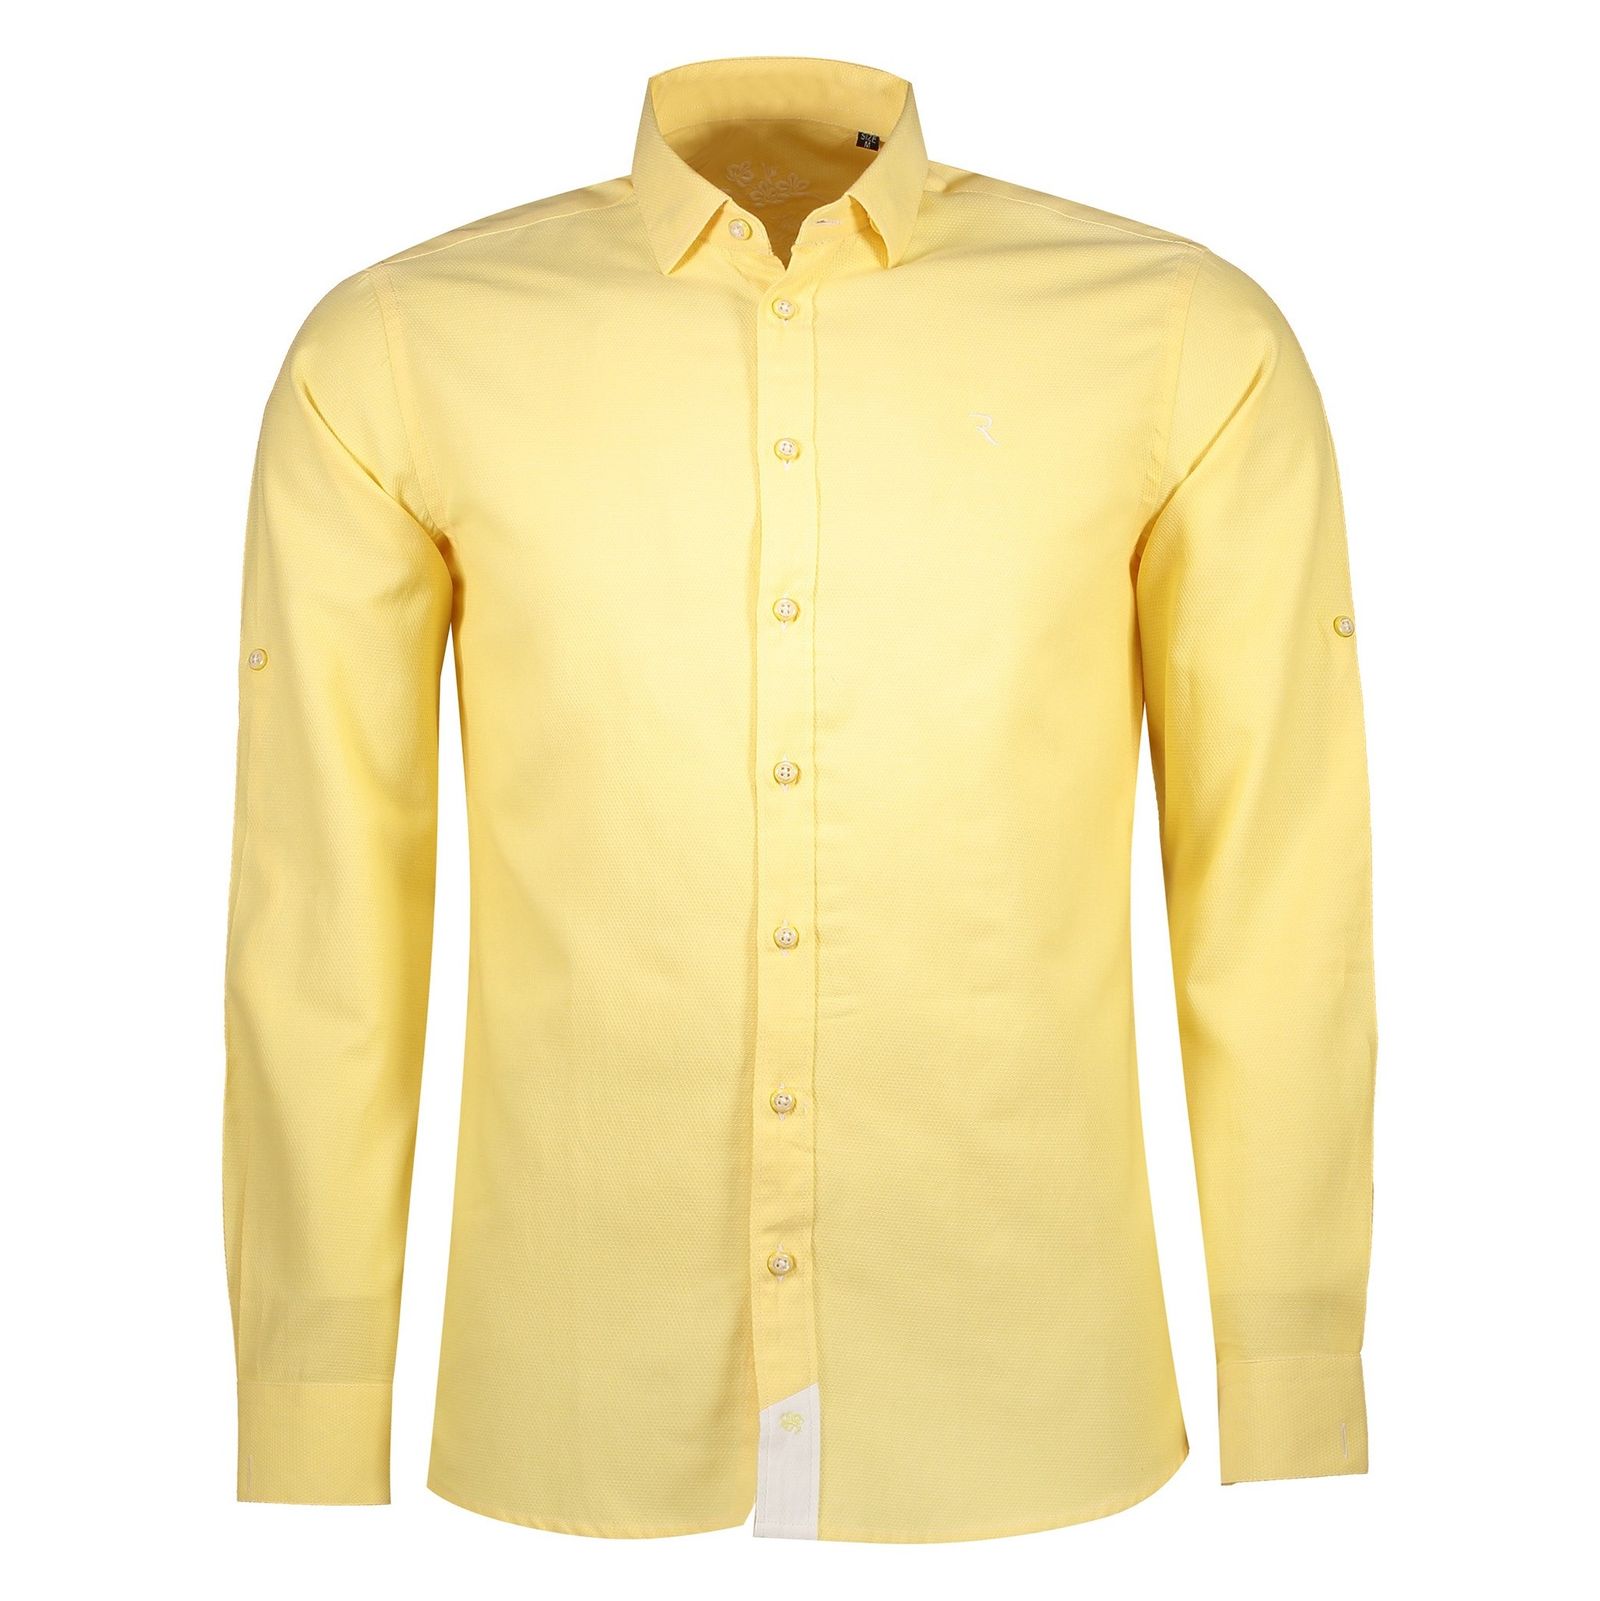 پیراهن نخی یقه برگردان مردانه - رونی - زرد - 1